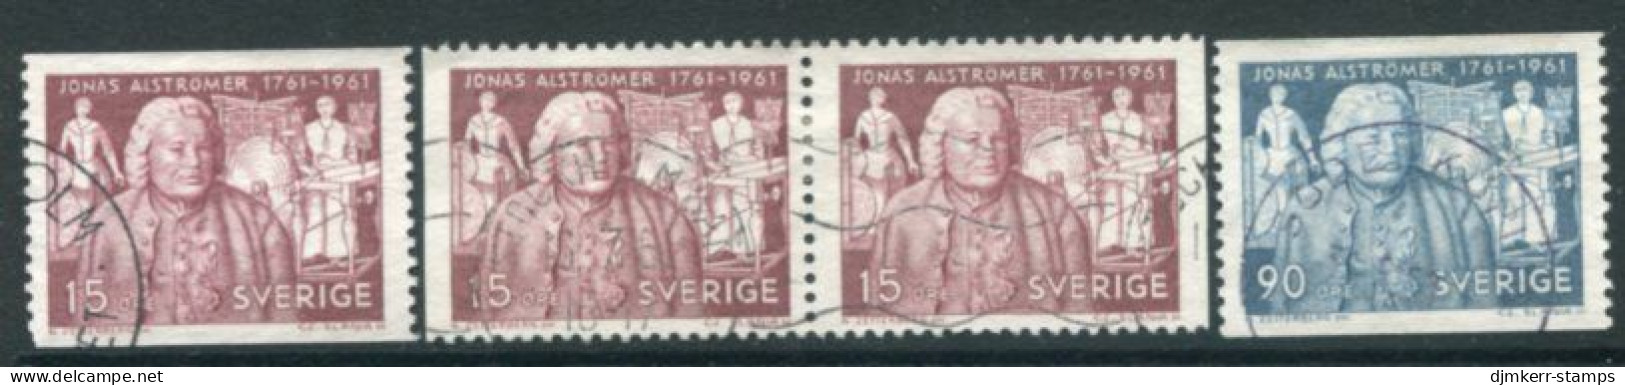 SWEDEN 1961 Alströmer Bicentenary Used.  Michel 473-74 - Used Stamps